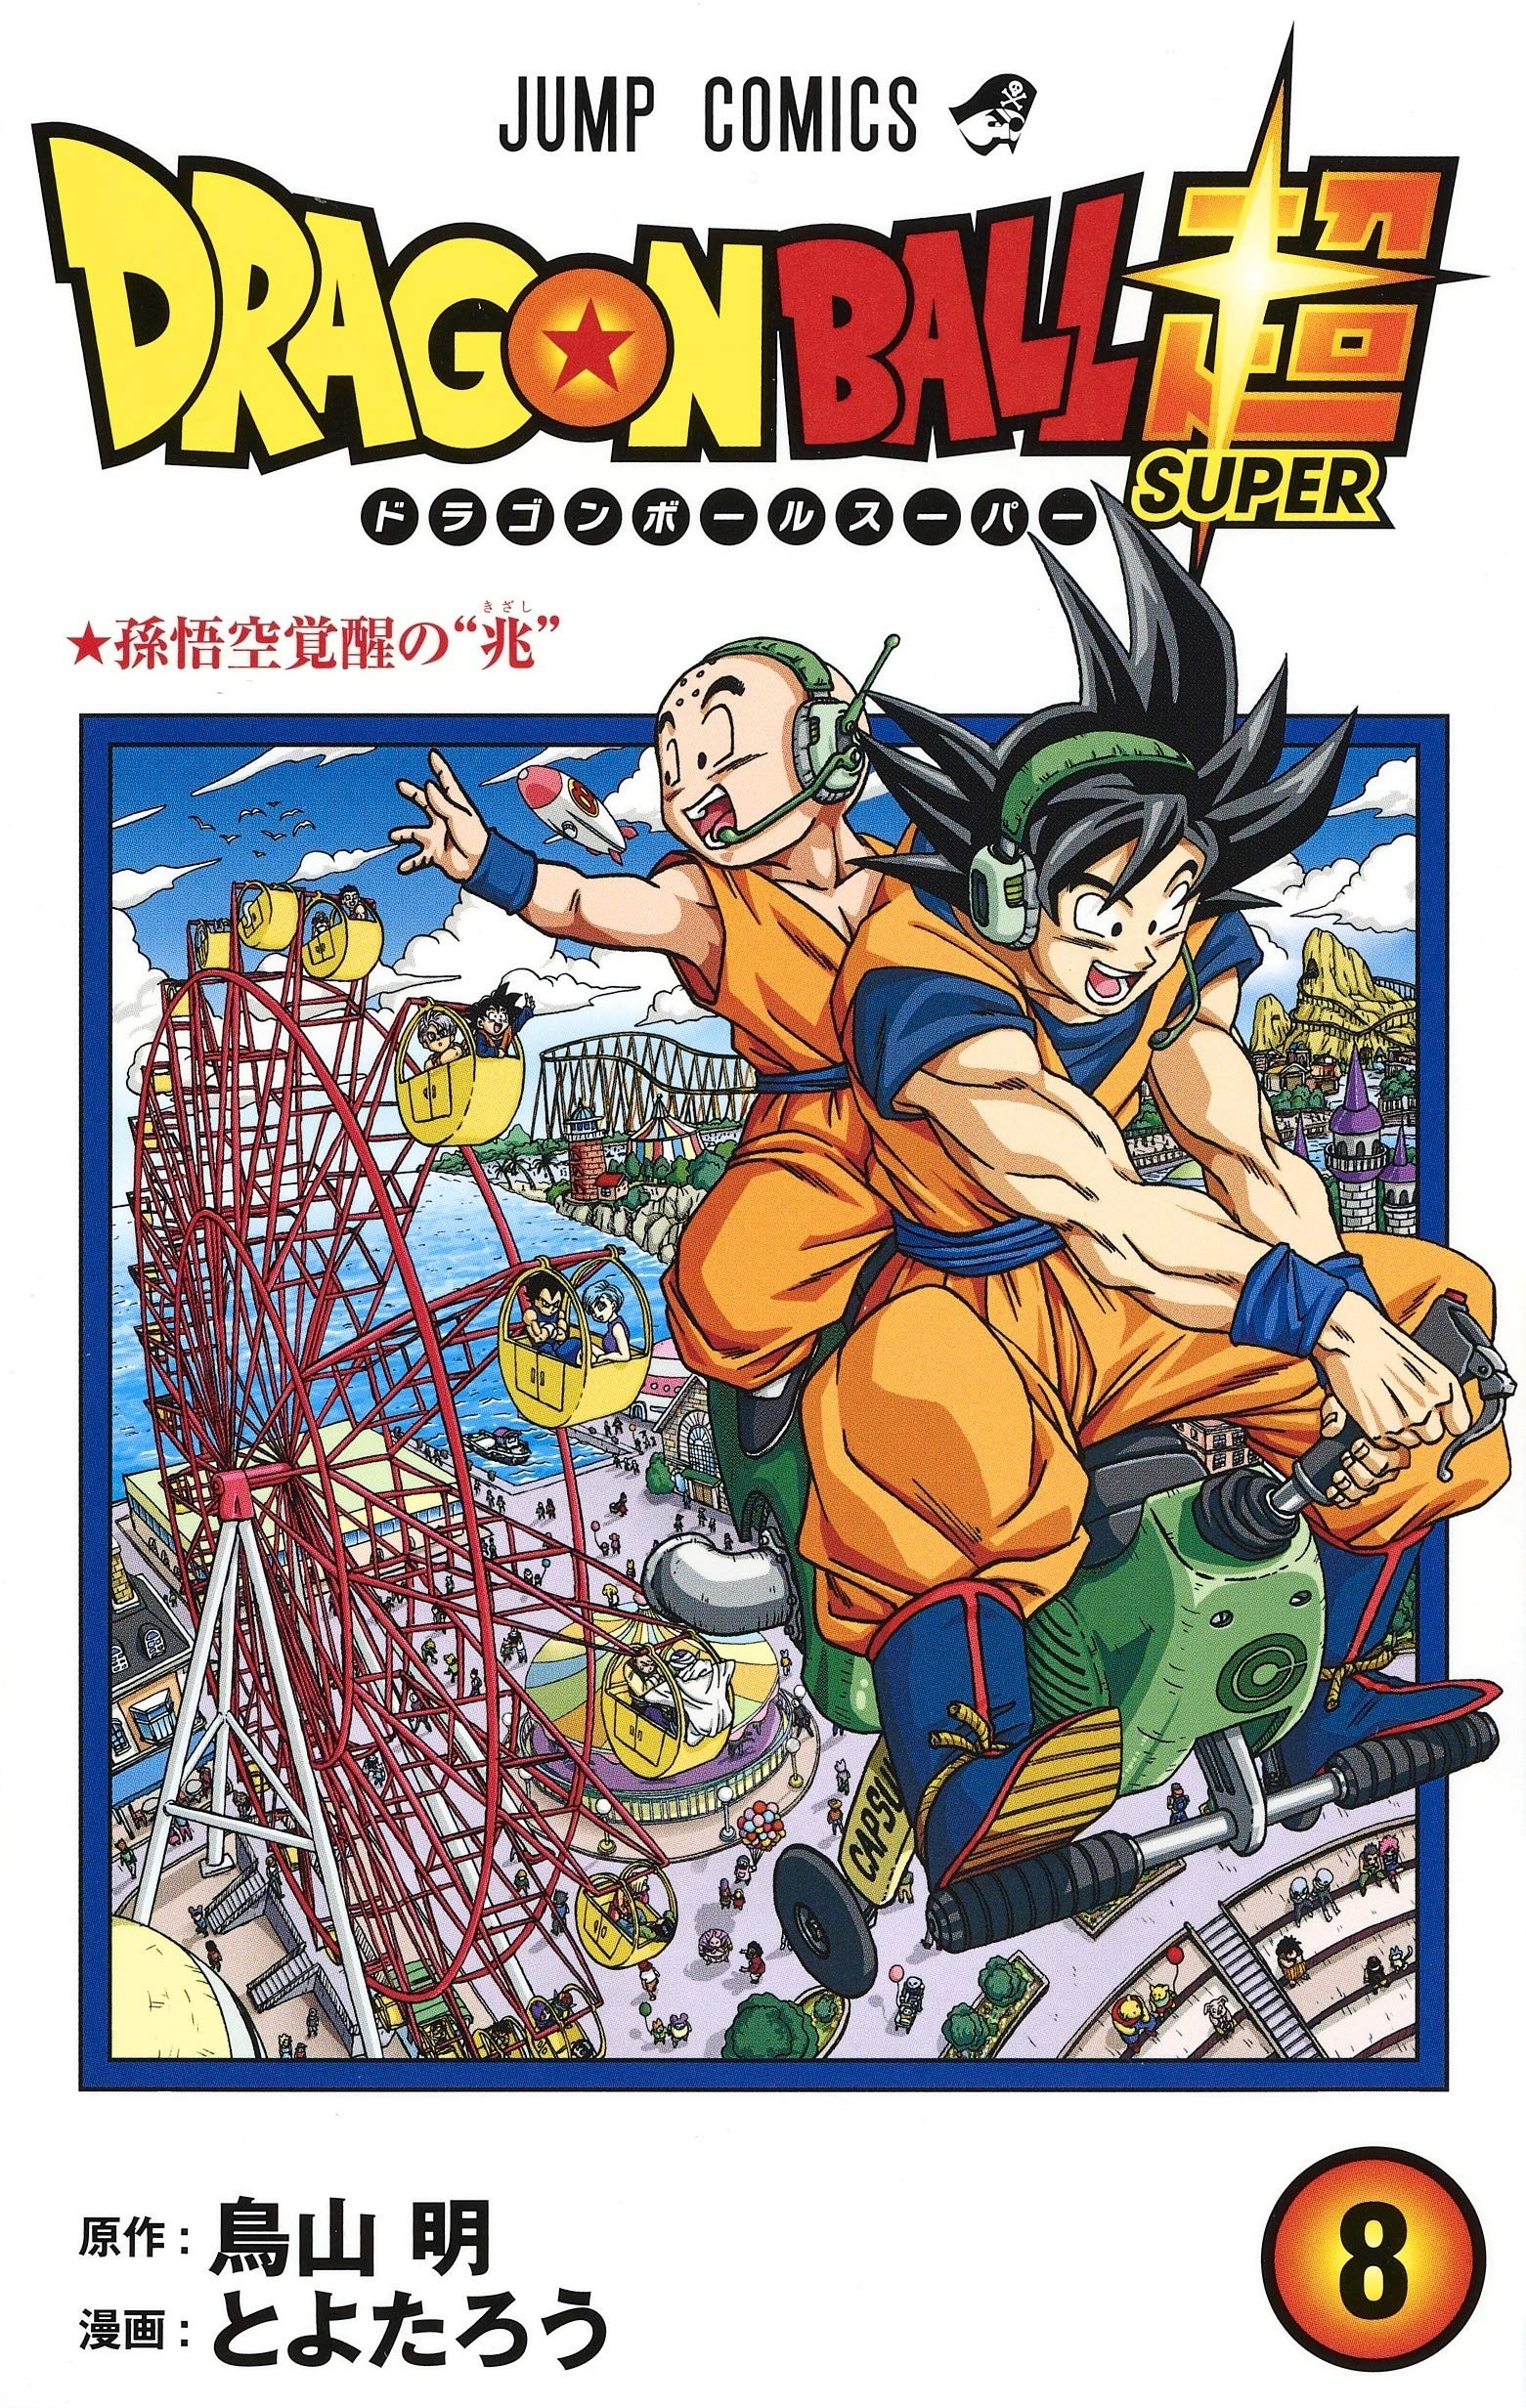 Dragon Ball Super, Vol. 8 by Akira Toriyama (Japanese Import)